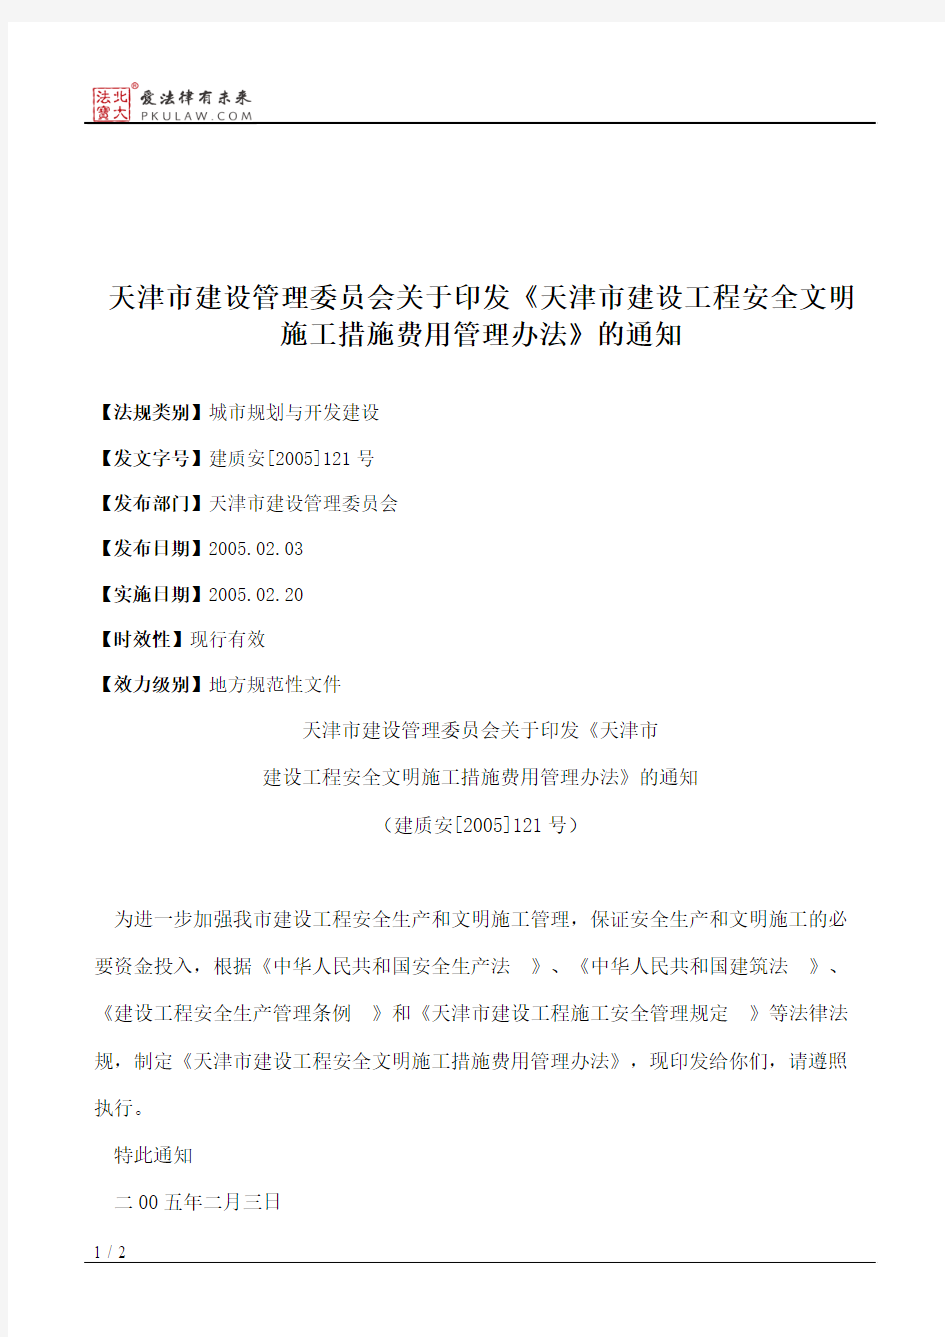 天津市建设管理委员会关于印发《天津市建设工程安全文明施工措施